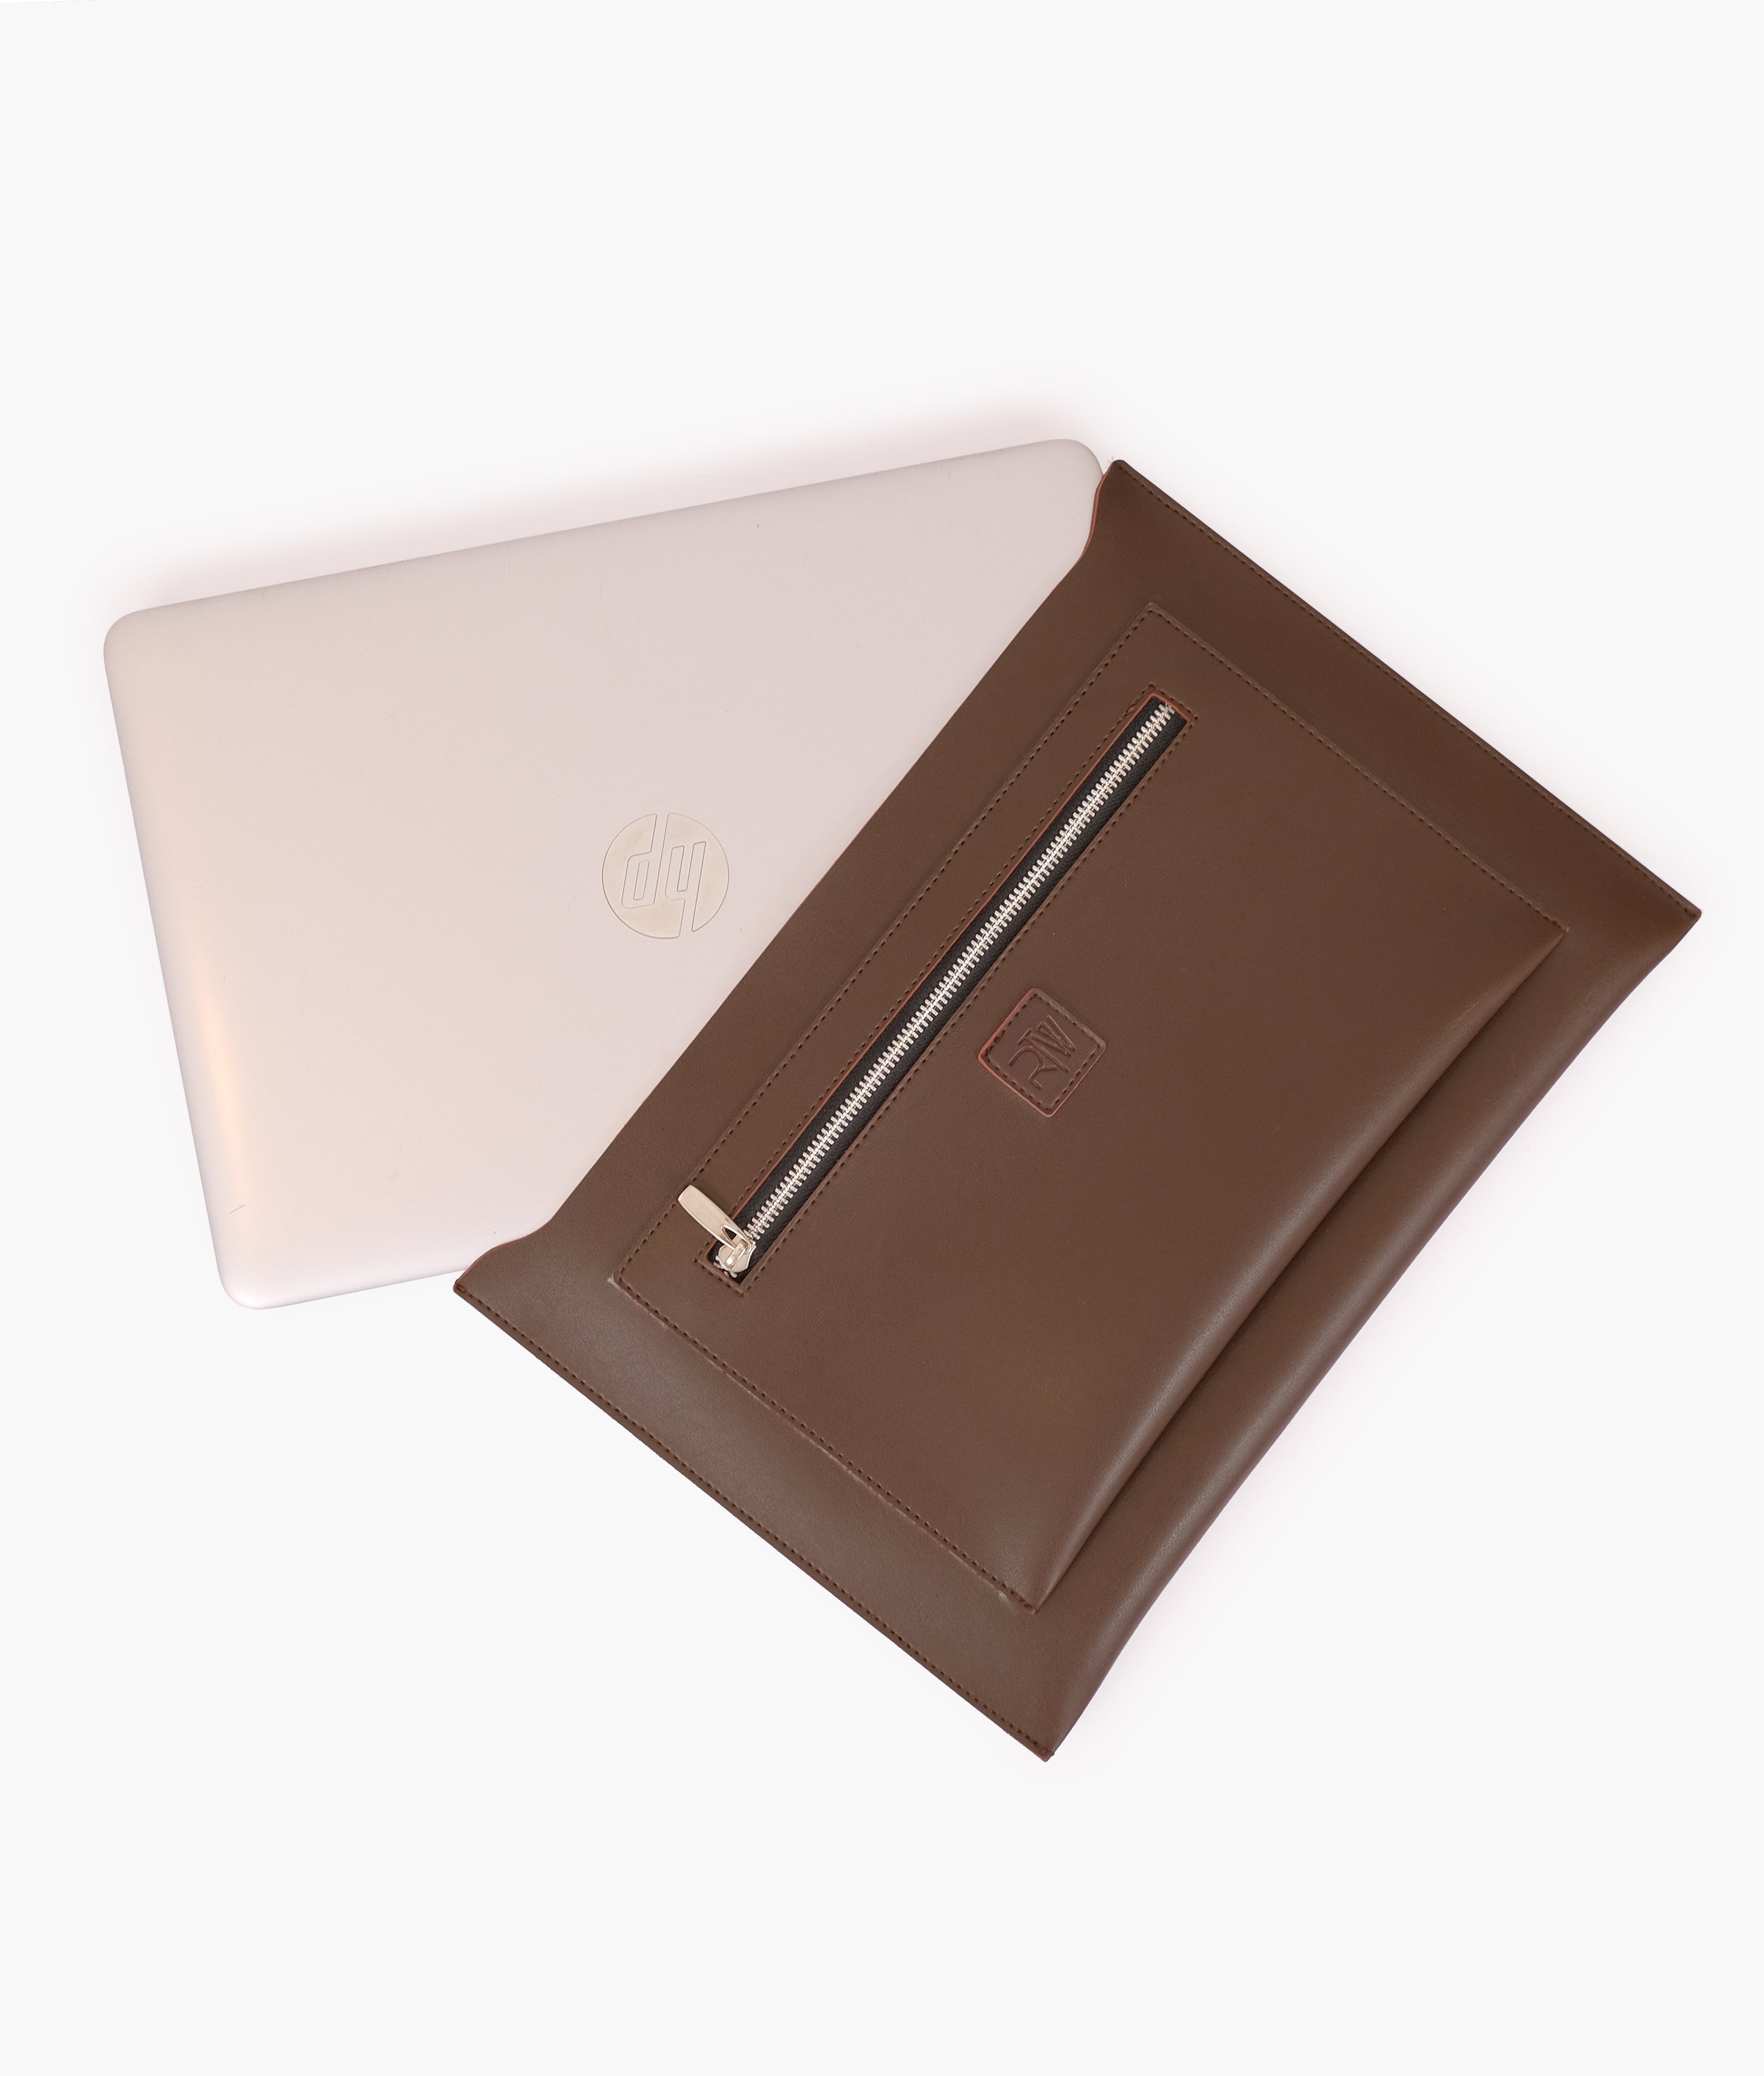 Dark brown suede laptop bag with sleeve